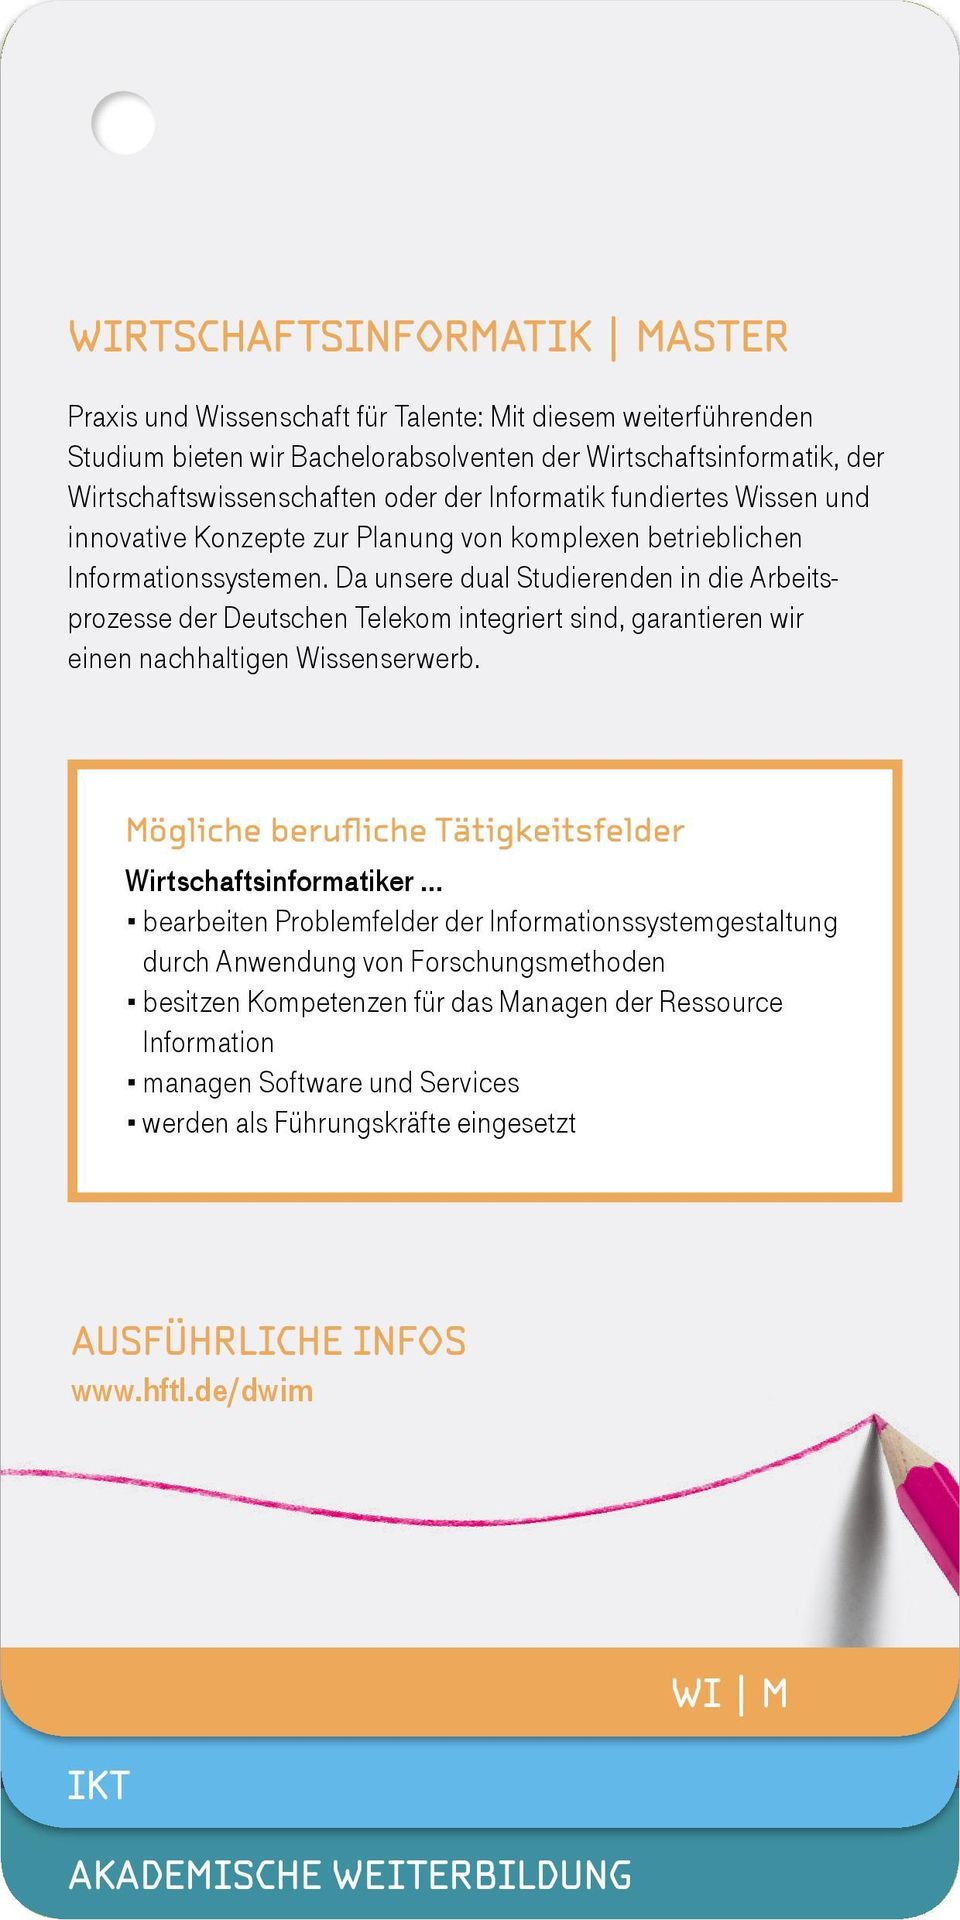 Da unsere dual Studierenden in die Arbeitsprozesse der Deutschen Telekom integriert sind, garantieren wir einen nachhaltigen Wissenserwerb.